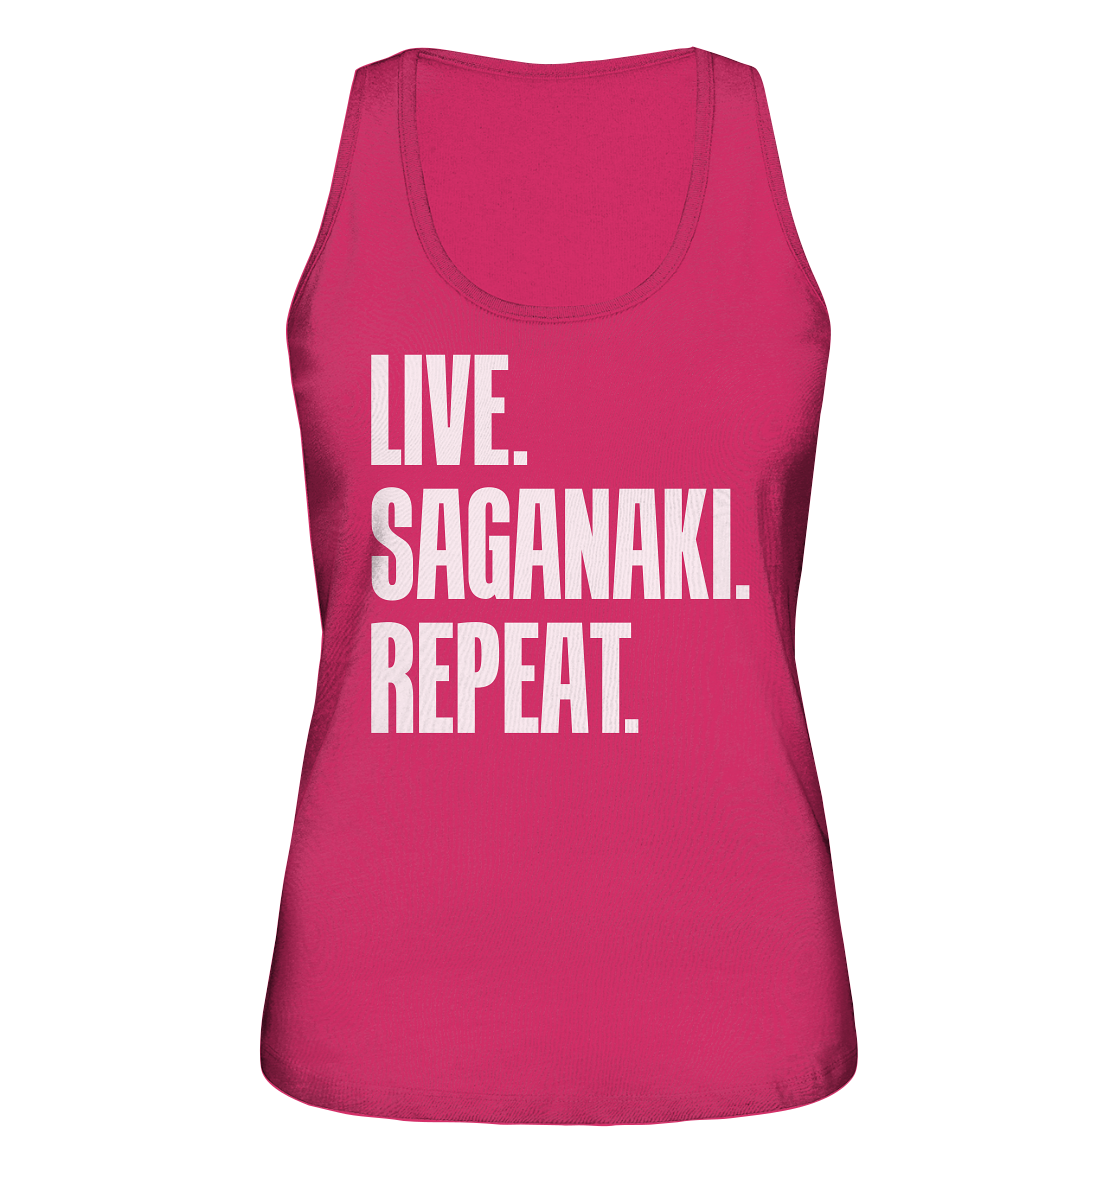 LIVE. SAGANAKI. REPEAT. - Ladies Organic Tank-Top